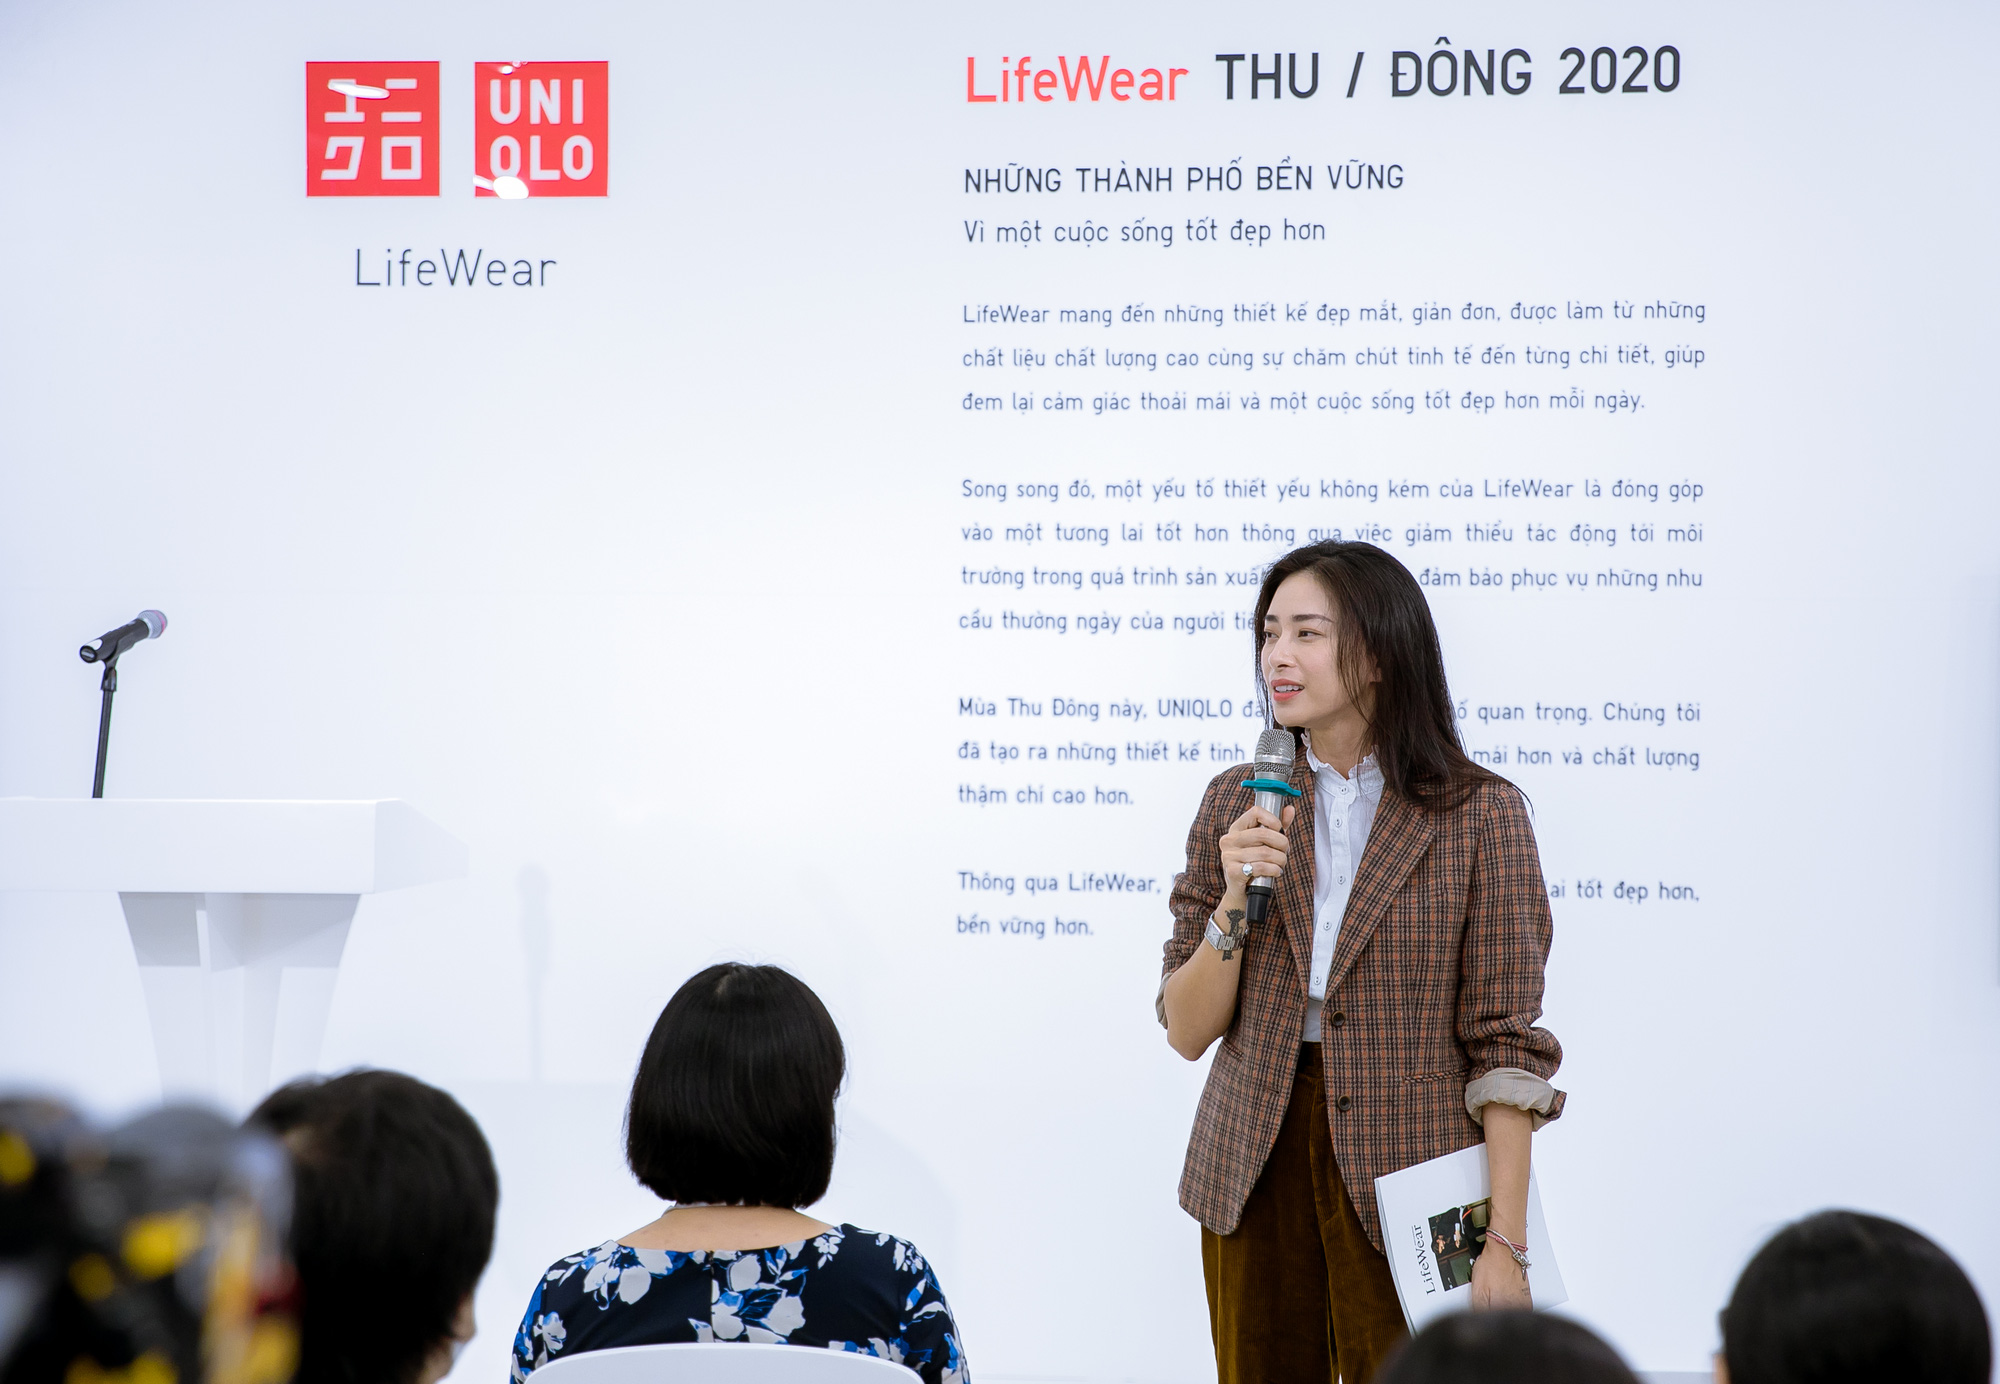 Uniqlo Vietnam  Sự kiện Giới thiệu về LifeWear và BST Thu Đông 2020 là nơi  chia sẻ với khách hàng Việt Nam về triết lý cốt lõi LifeWear của UNIQLO  LifeWear